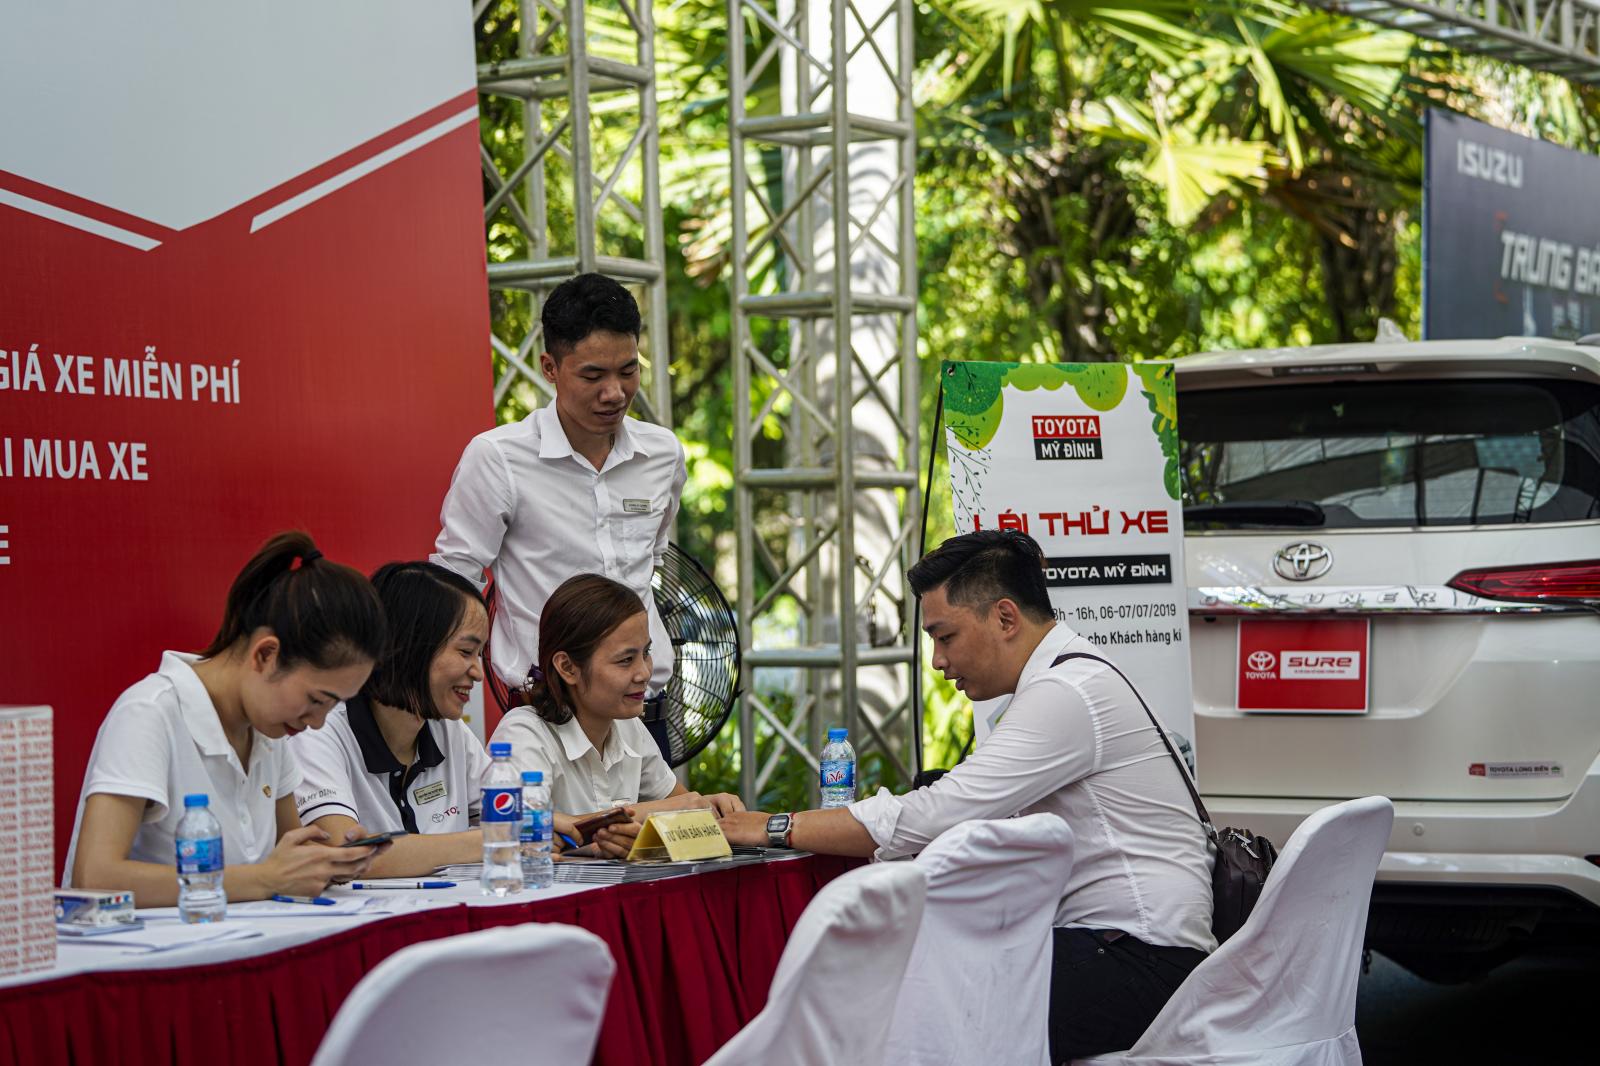 Doanh số bán hàng Toyota tháng 4/2020 dẫn đầu thị trường Việt 1